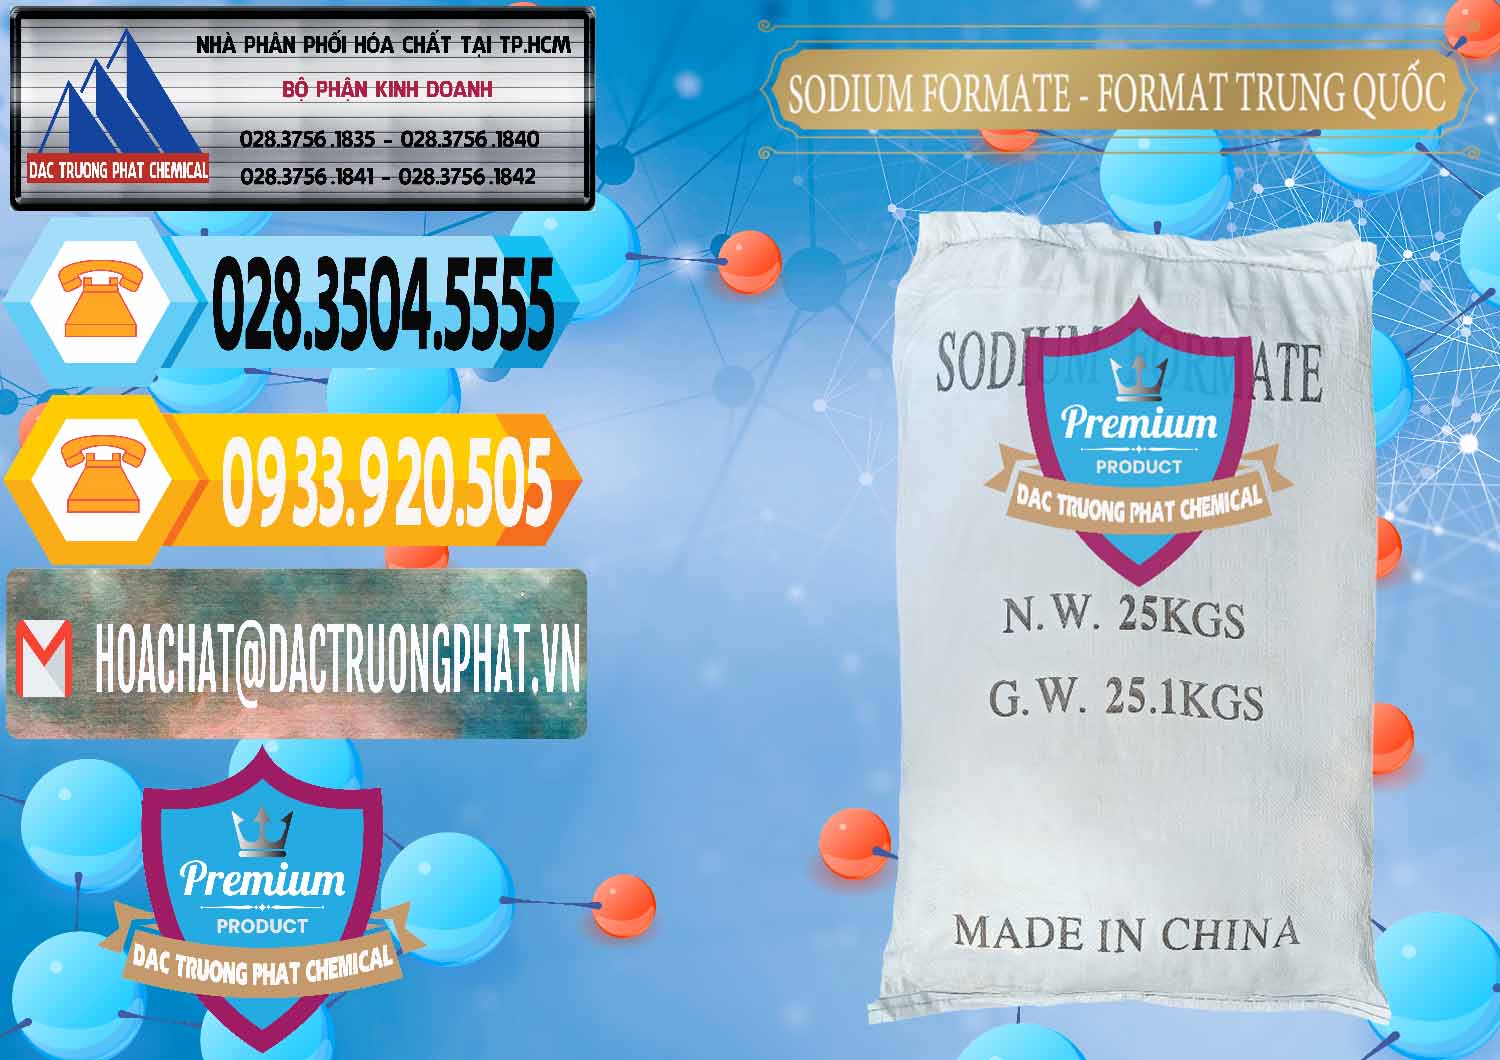 Công ty phân phối và bán Sodium Formate - Natri Format Trung Quốc China - 0142 - Cty phân phối ( cung cấp ) hóa chất tại TP.HCM - hoachattayrua.net